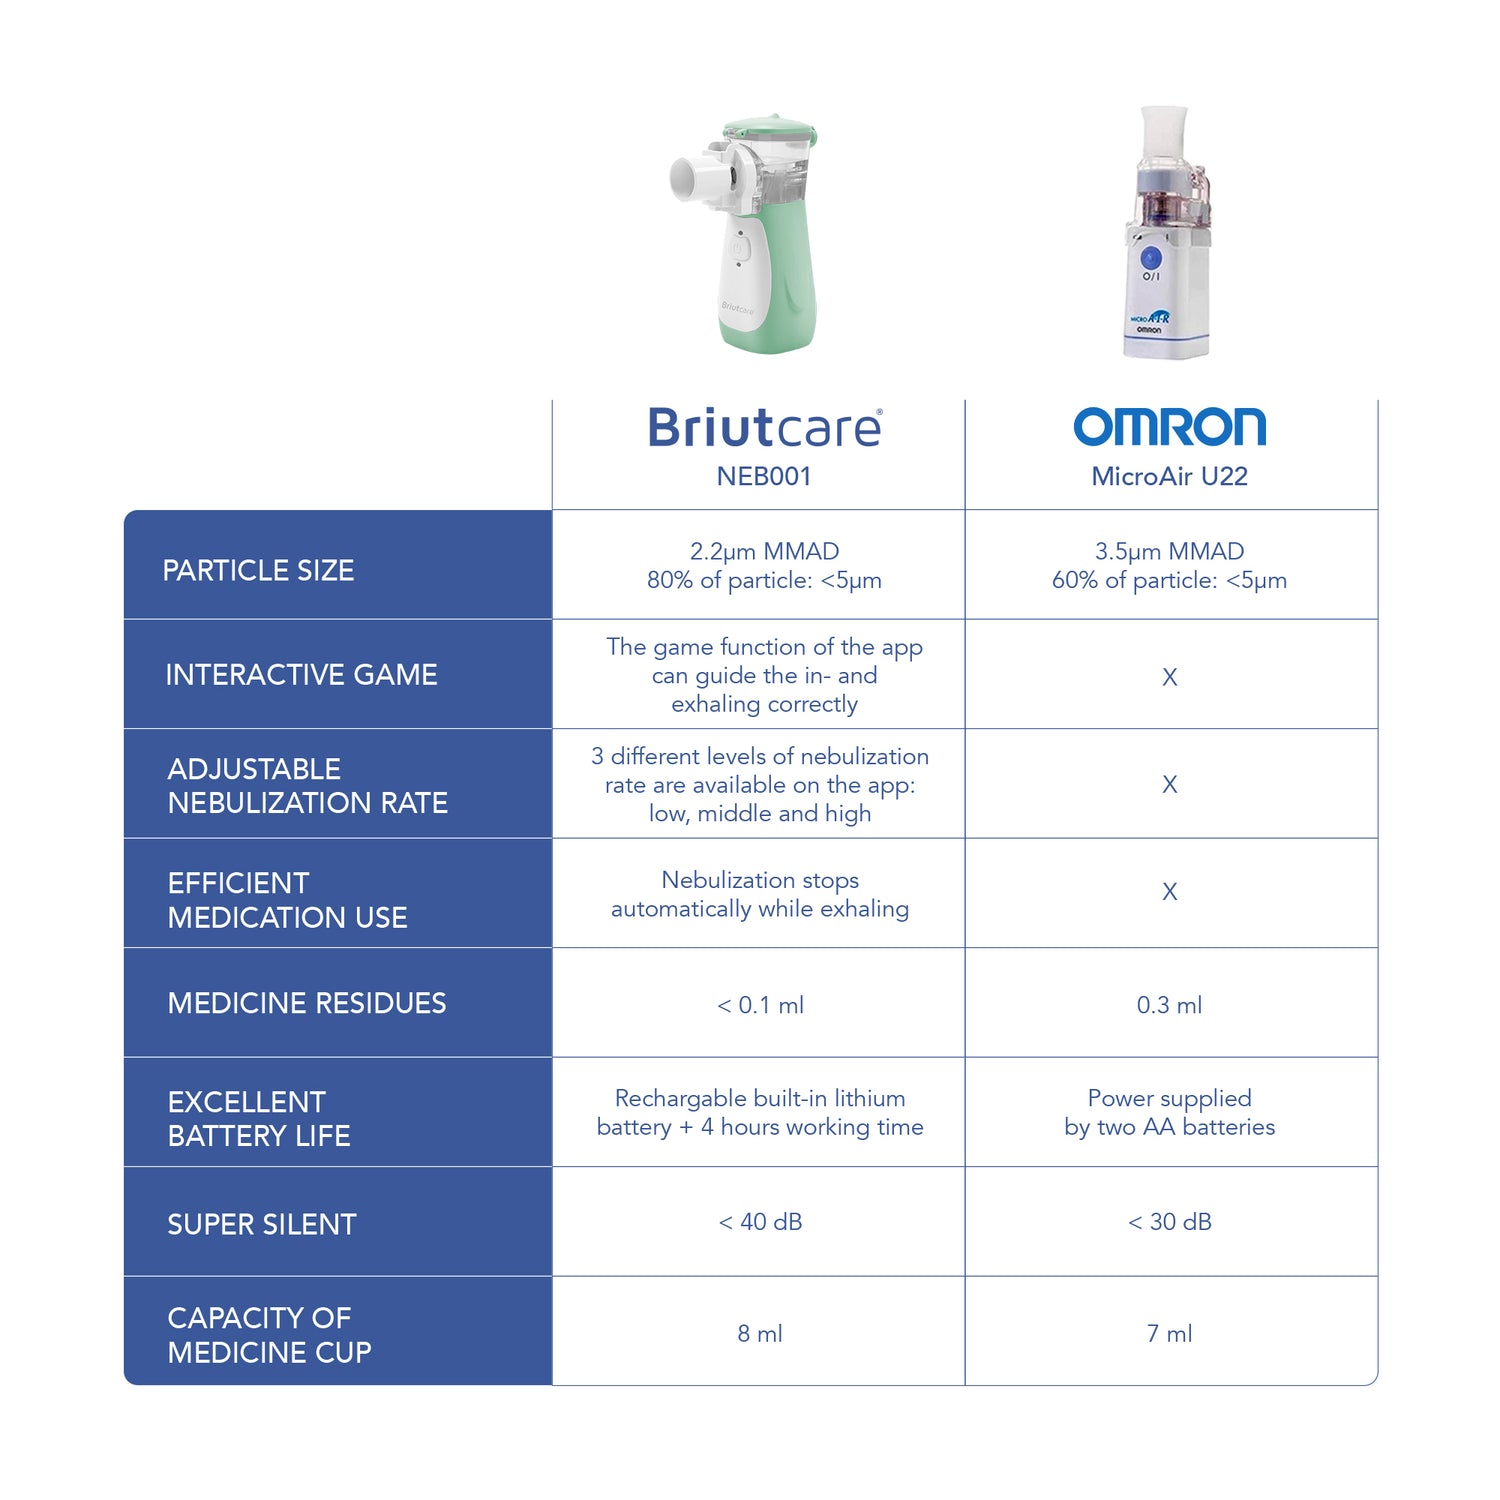 Briutcare Portable Nebulizer compare to competition nebulizer